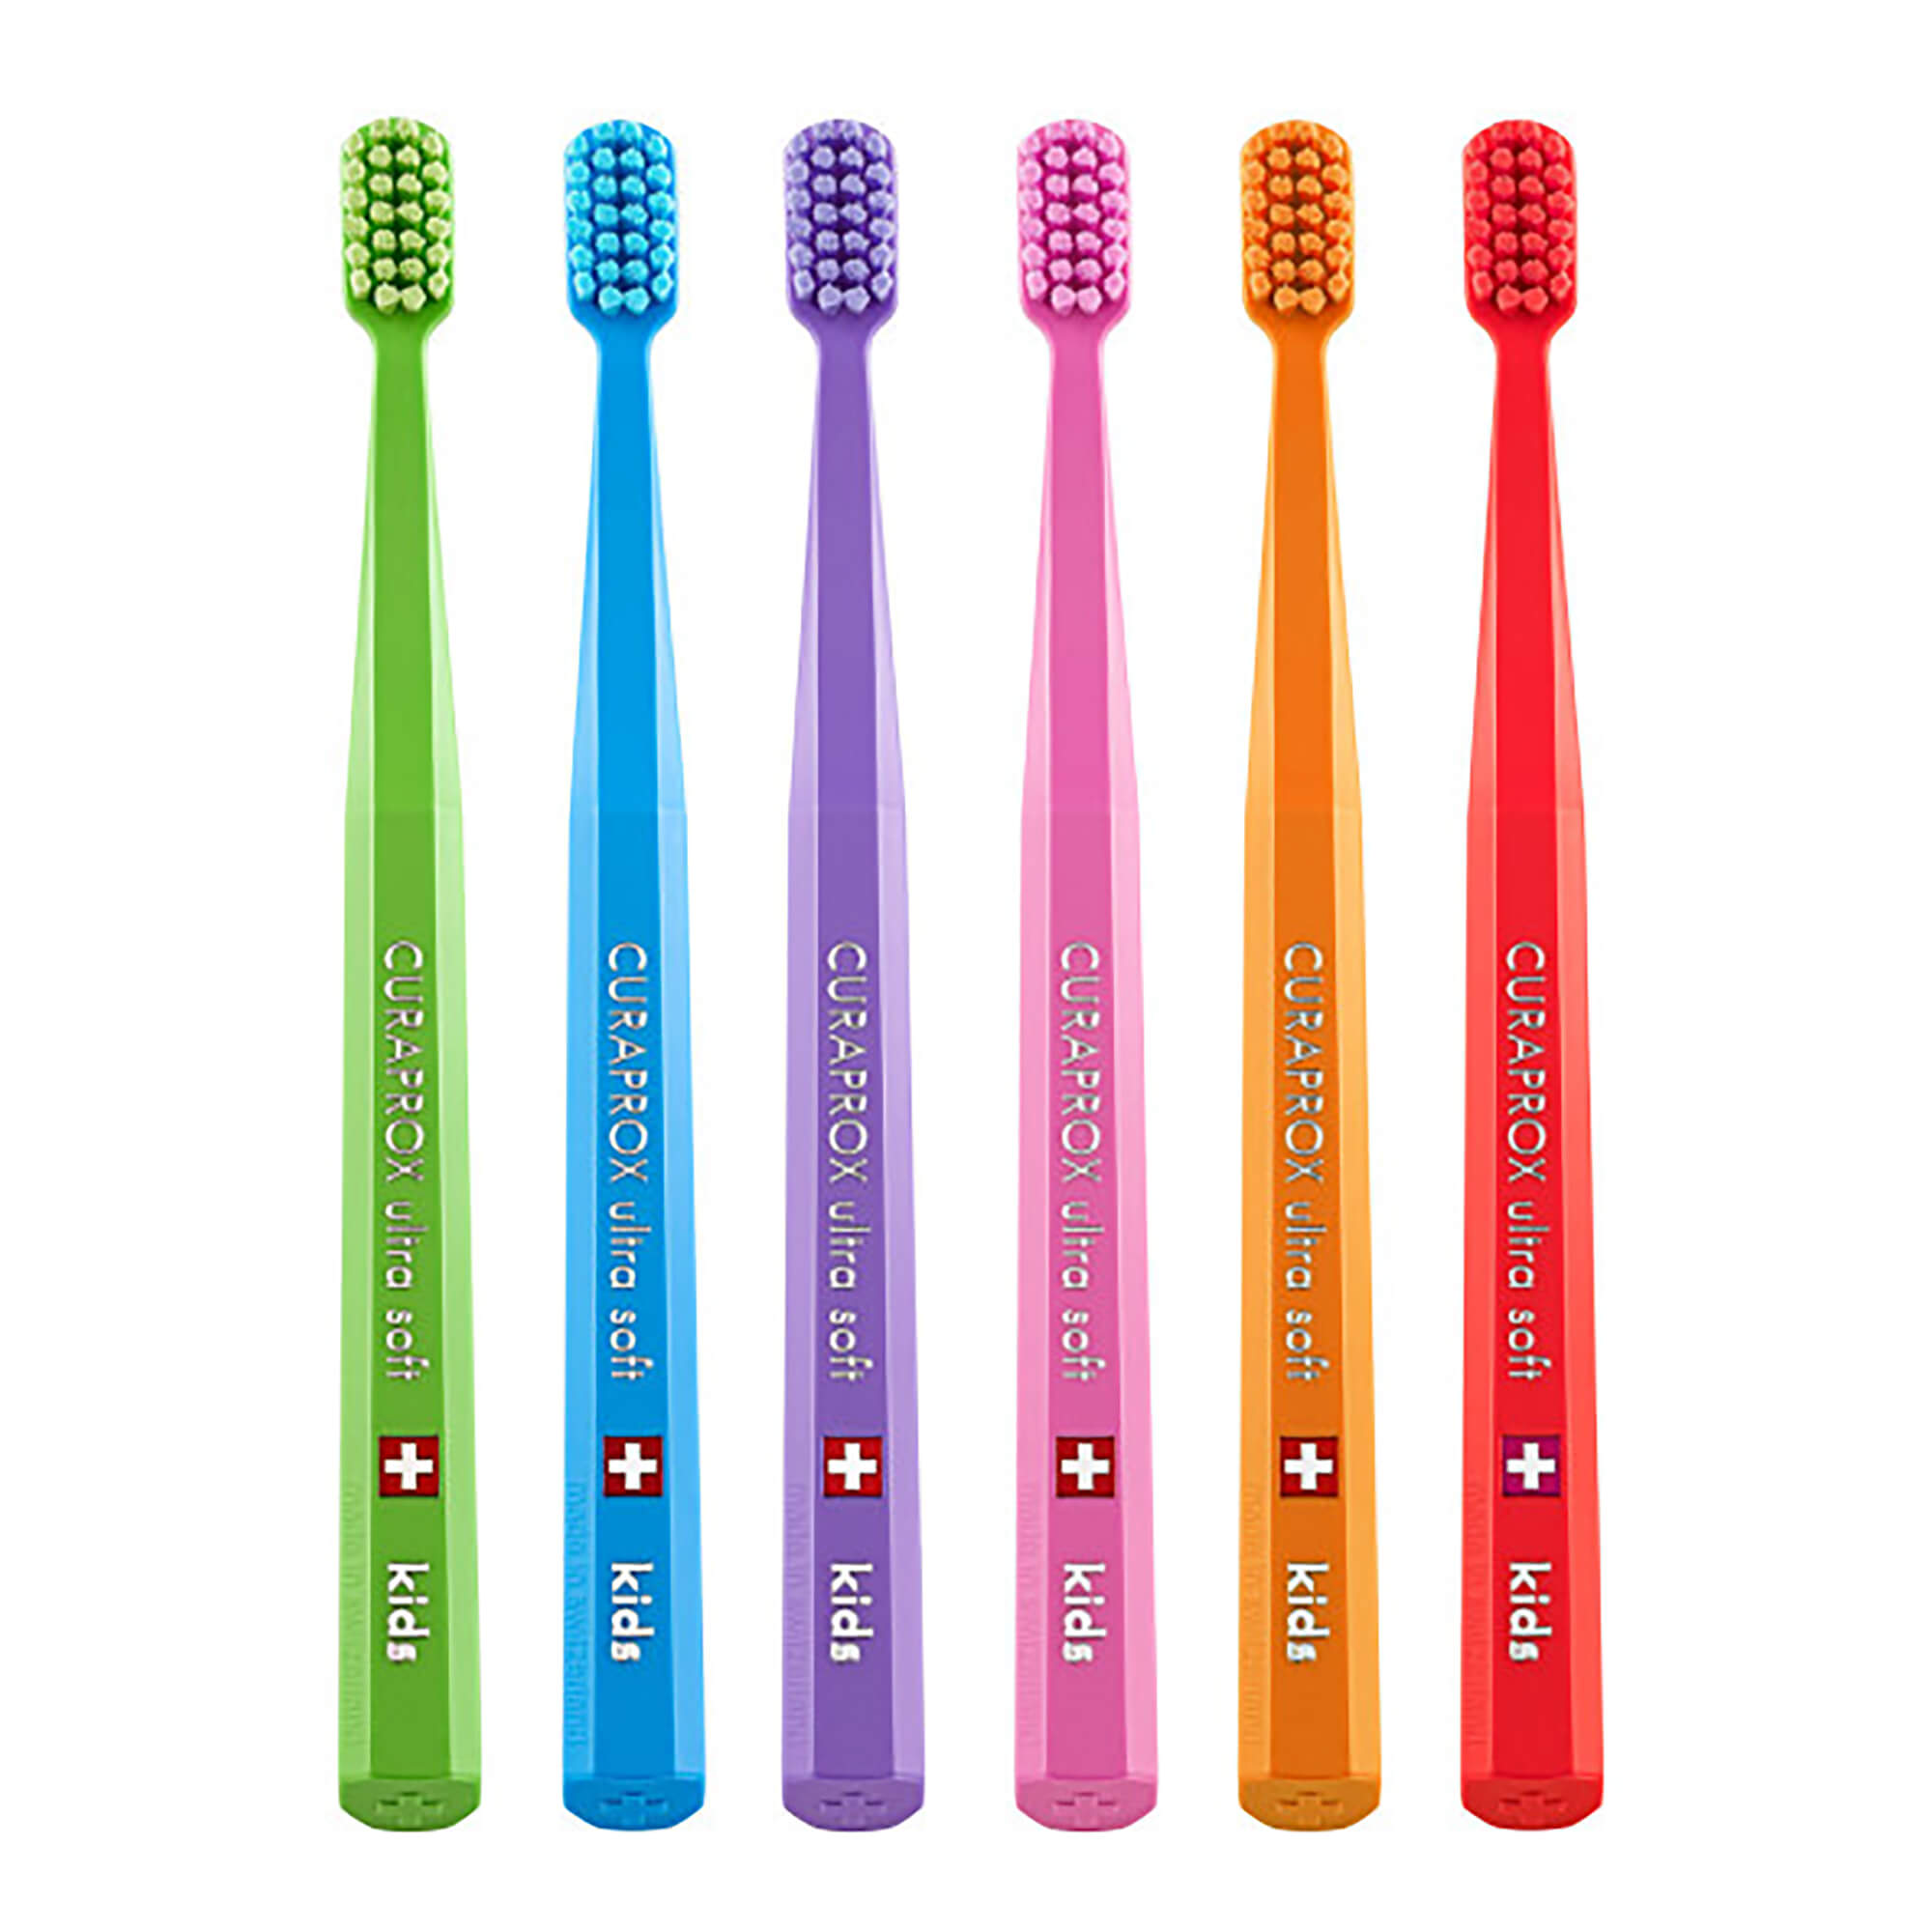 Superweiche Kinderzahnbürste. Geeignet für Kinder (4-12 Jahre) zum täglichen Zähneputzen. In 6 verschiedenen Farben erhältlich.